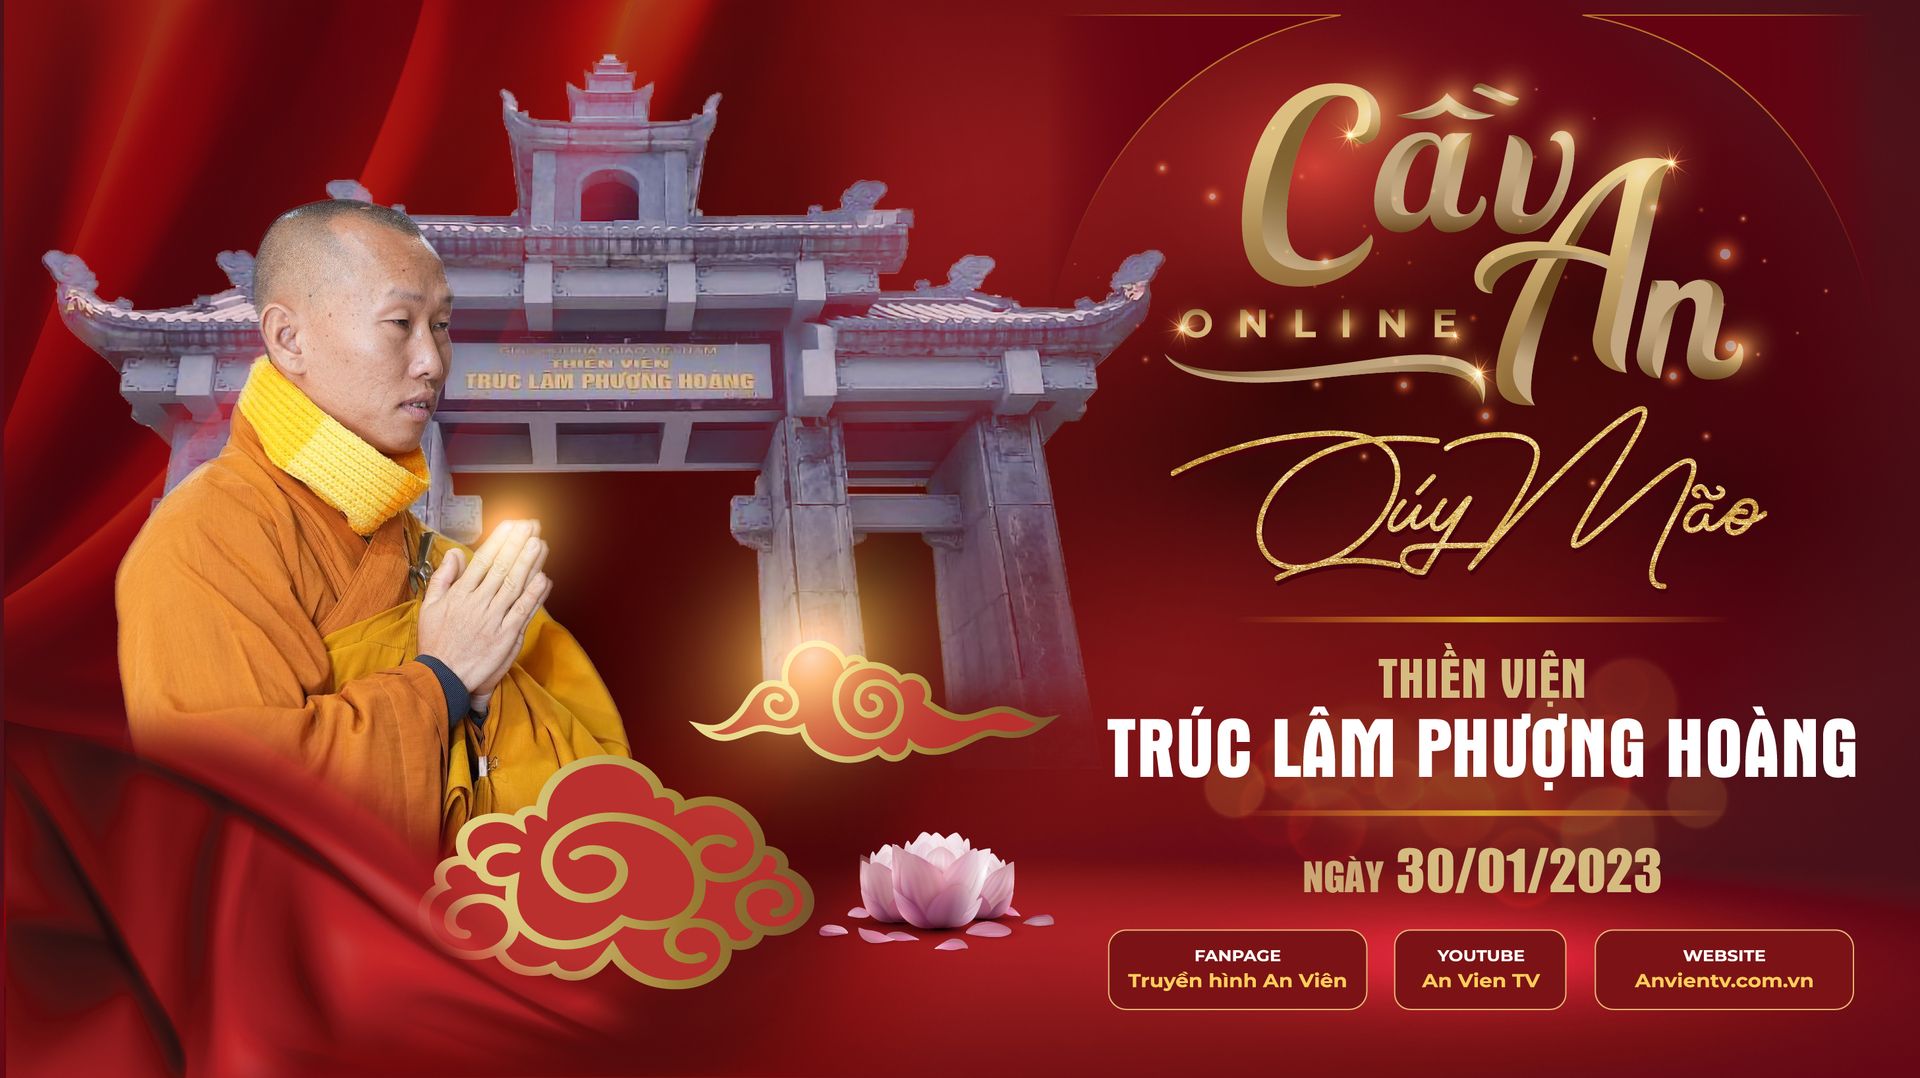 Thiền viện Trúc Lâm Phượng Hoàng: Điểm nhấn tâm linh tại Bắc Giang